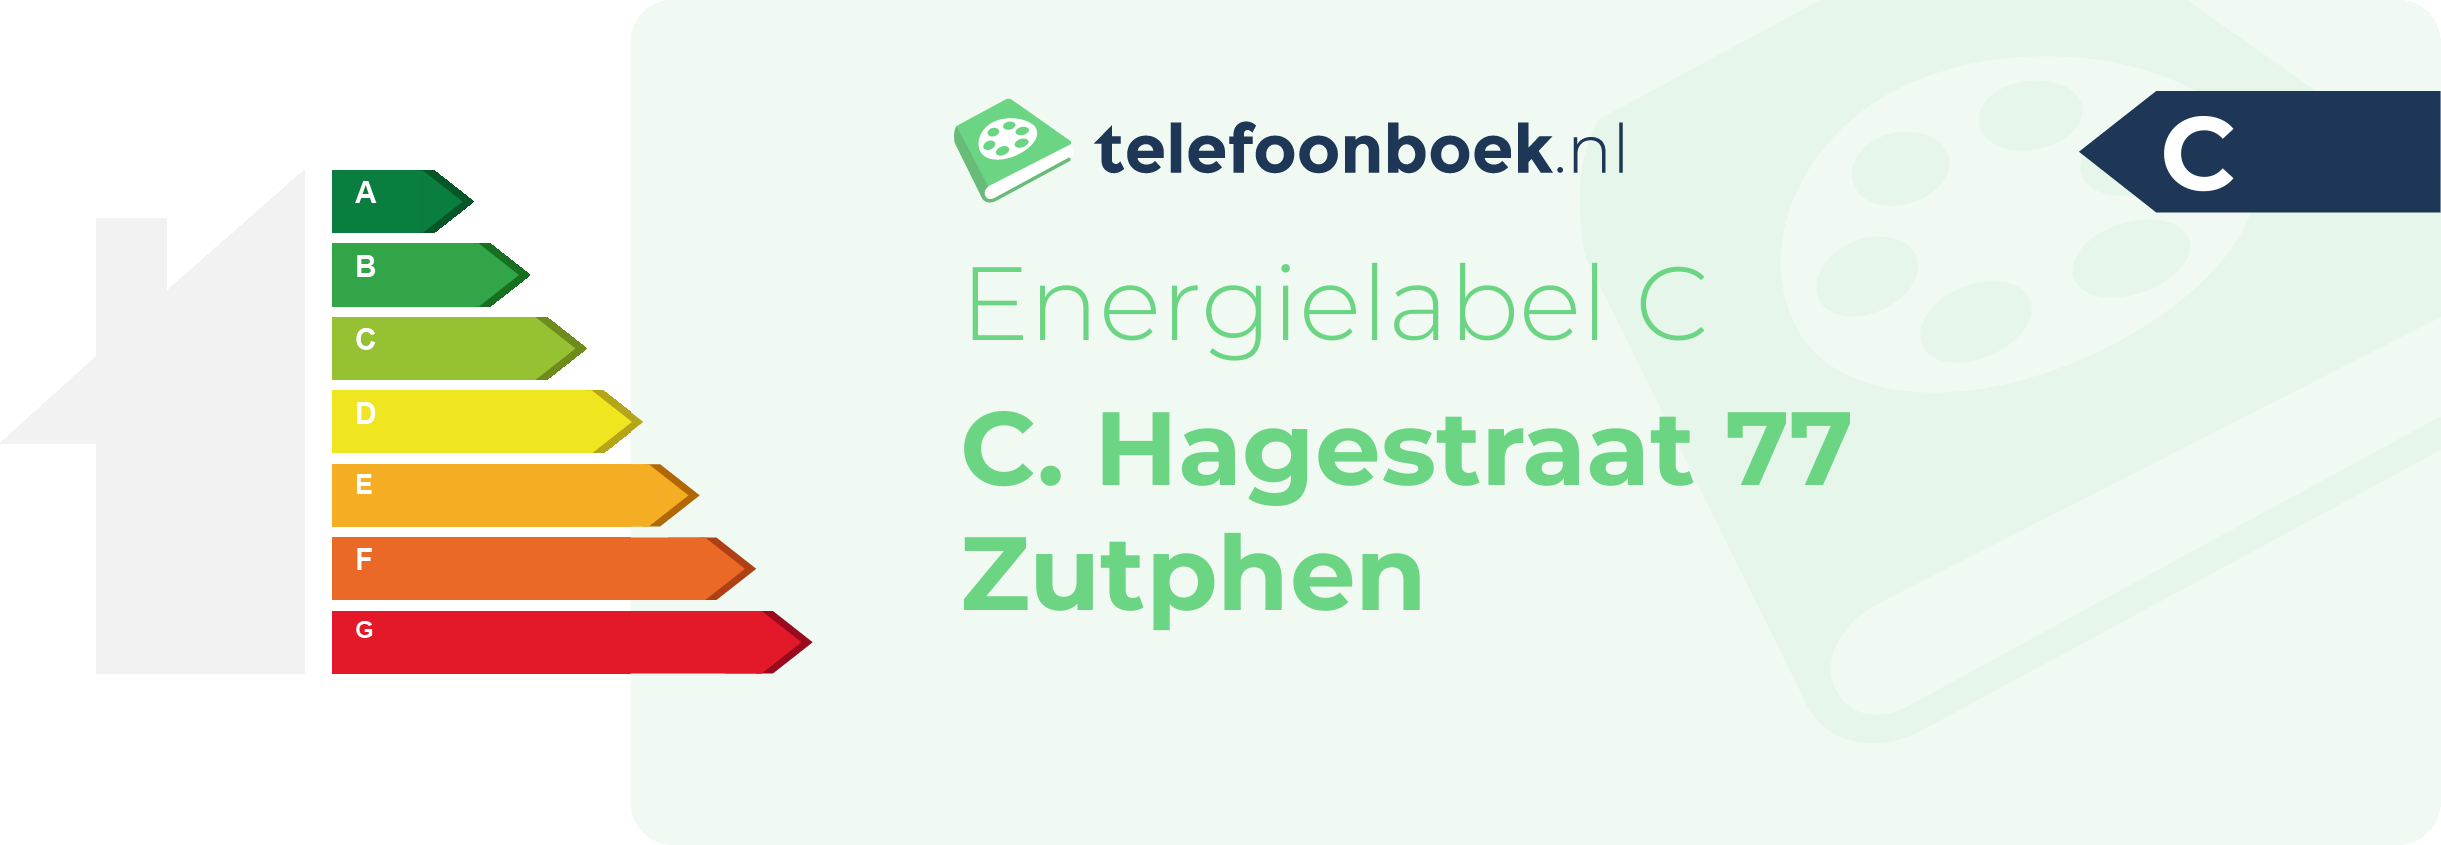 Energielabel C. Hagestraat 77 Zutphen